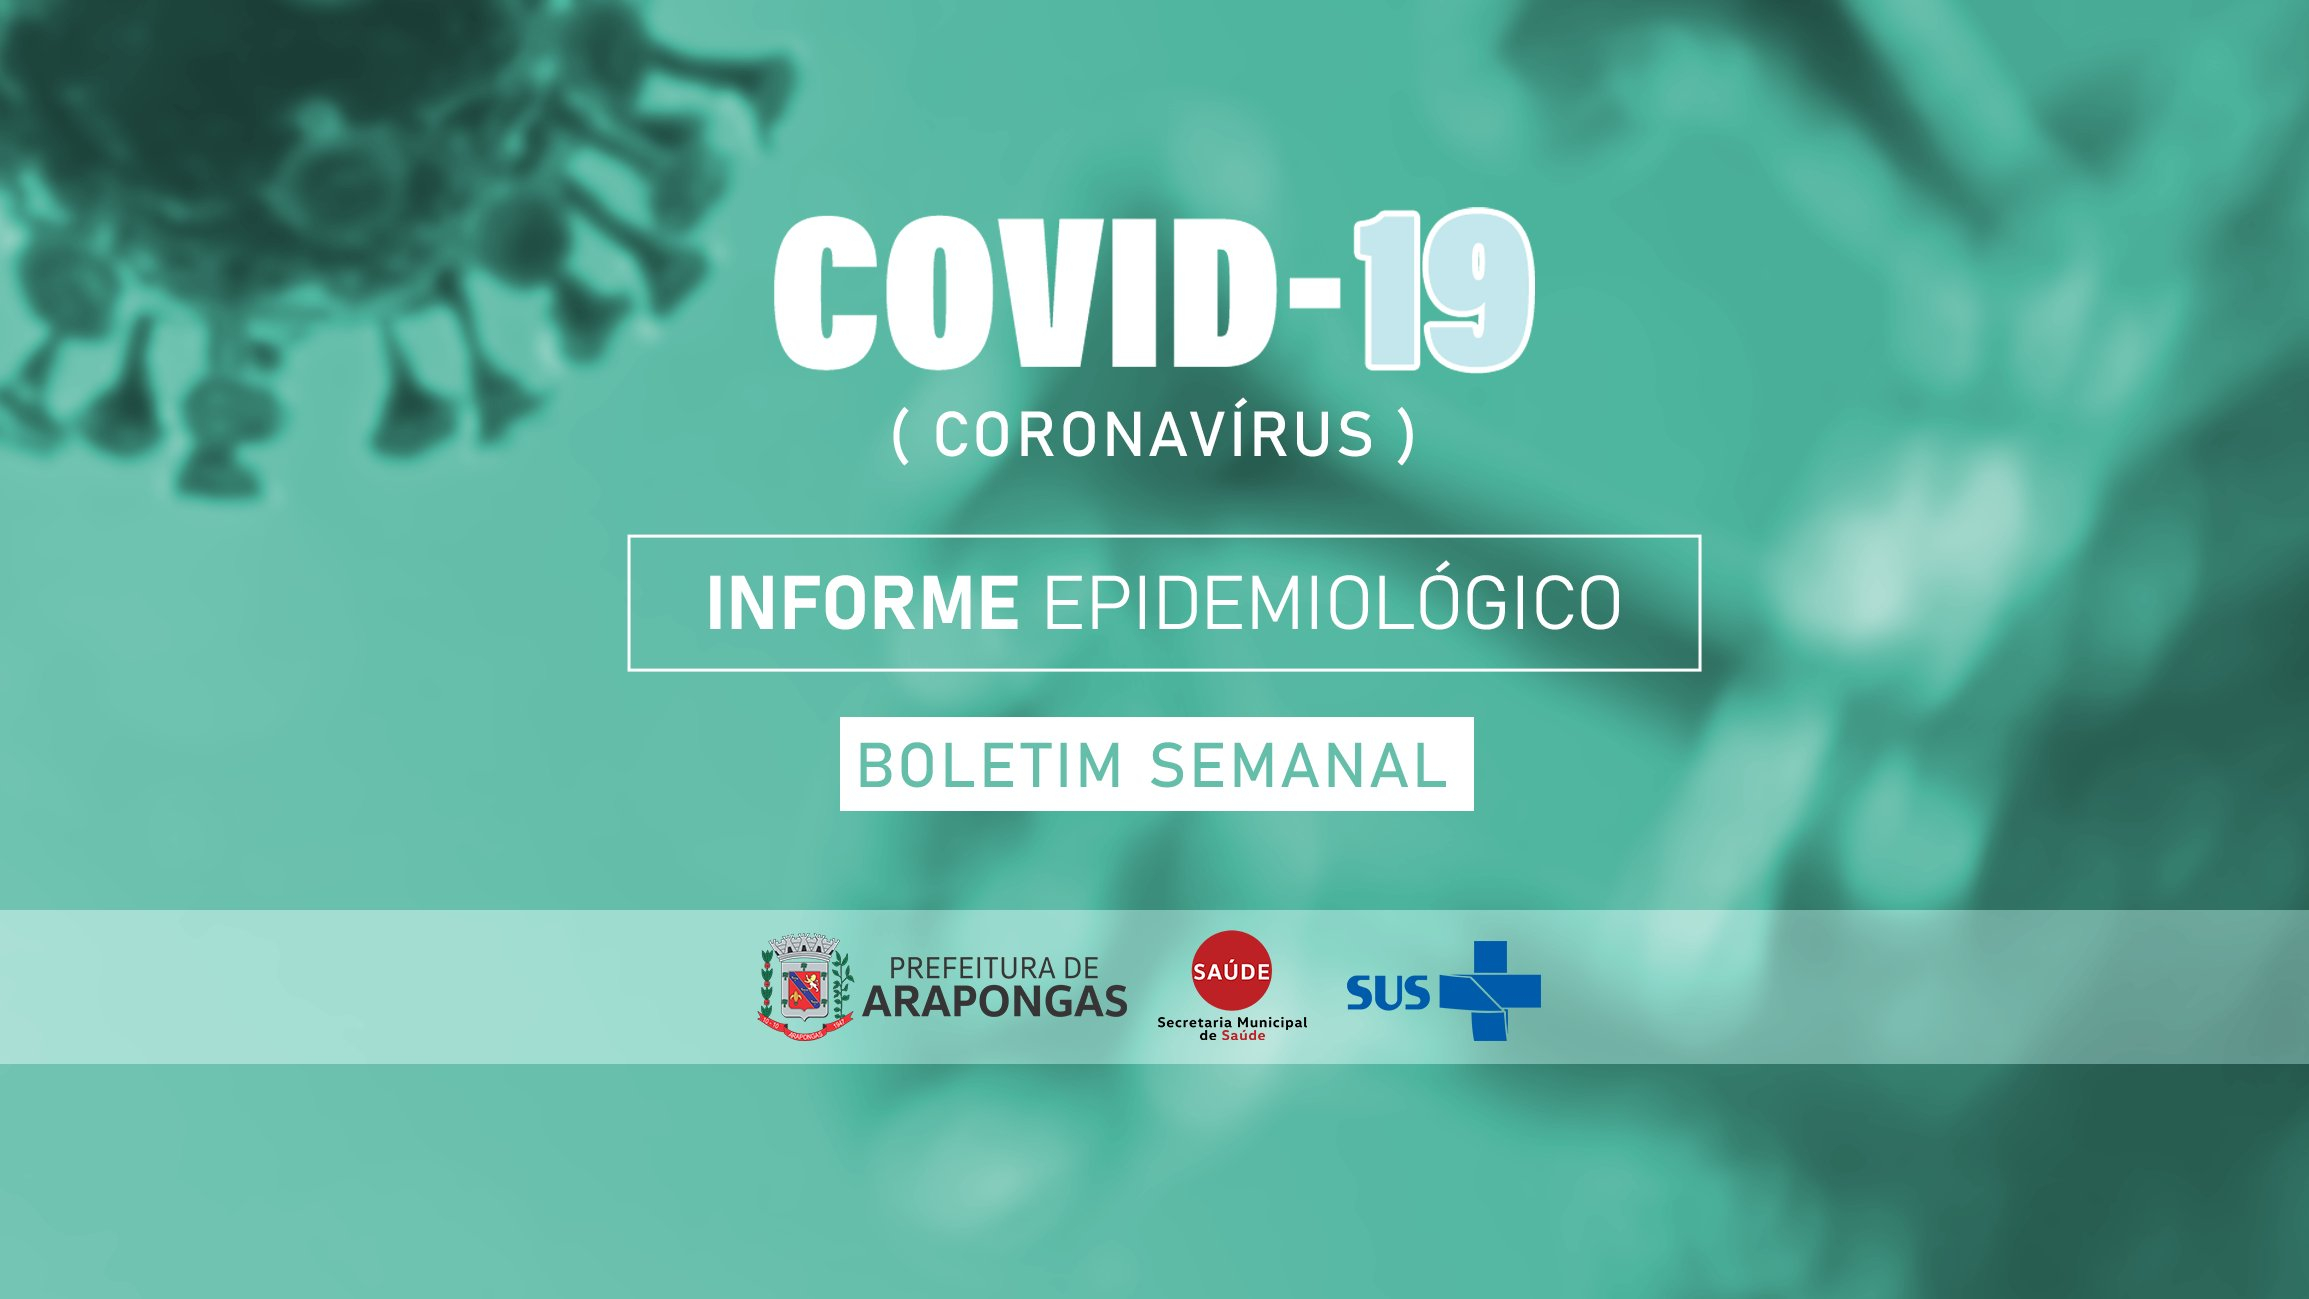 Confira o Boletim Semanal Epidemiológico da Covid-19 em Arapongas